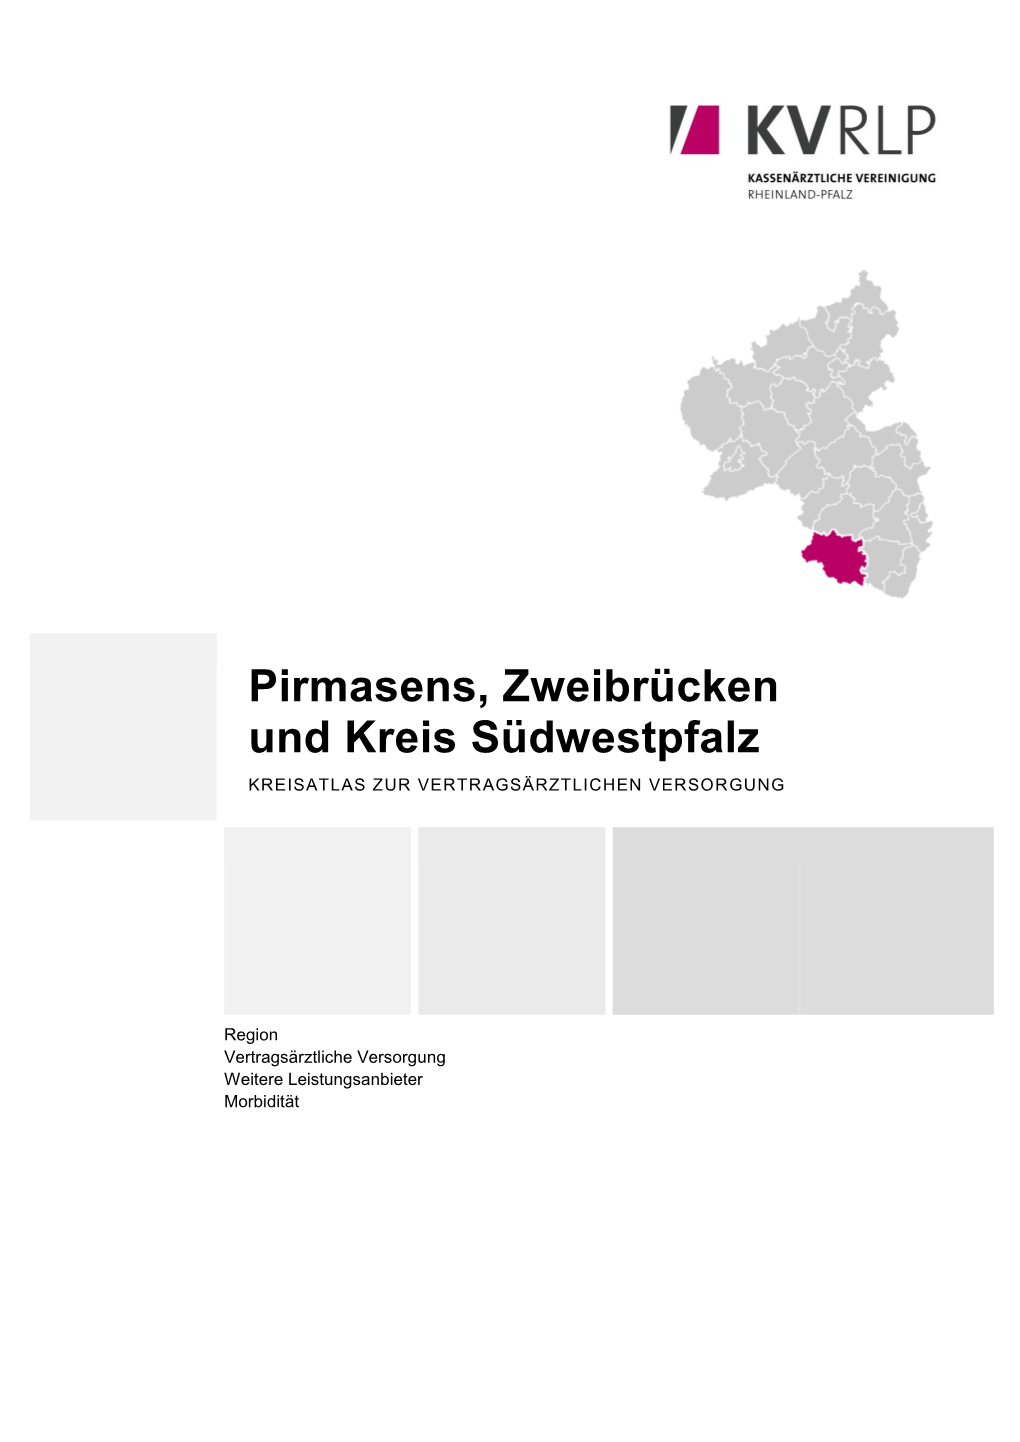 Pirmasens, Zweibrücken Und Kreis Südwestpfalz KREISATLAS ZUR VERTRAGSÄRZTLICHEN VERSORGUNG